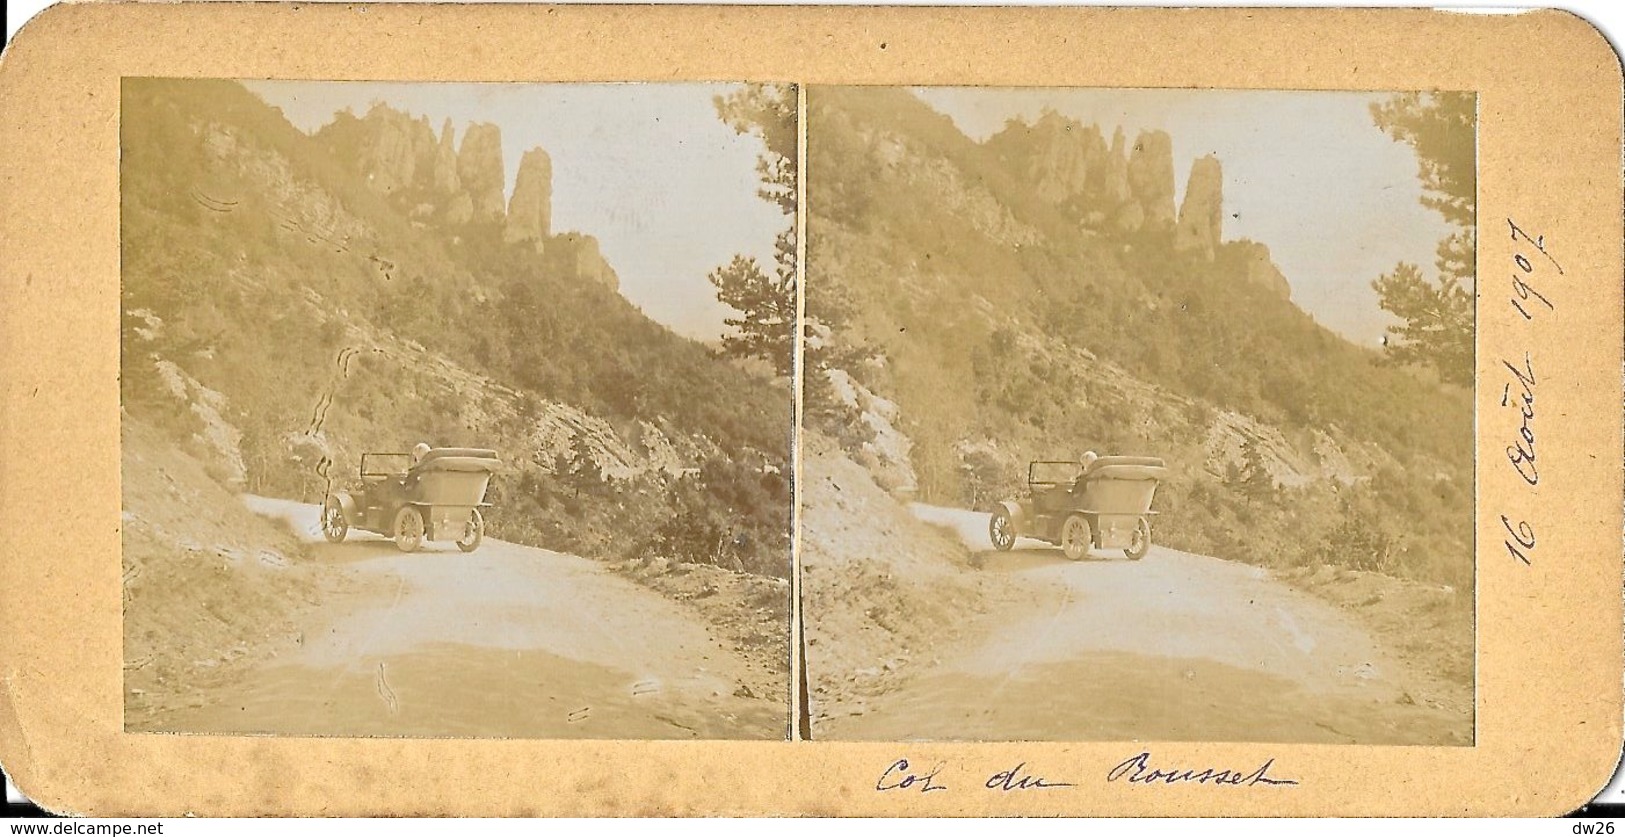 Photo Stéréoscopique Du Col Du Rousset (Drôme) En 1907 Sur Carton Rigide - Vieux Tacot - Stereoscopic